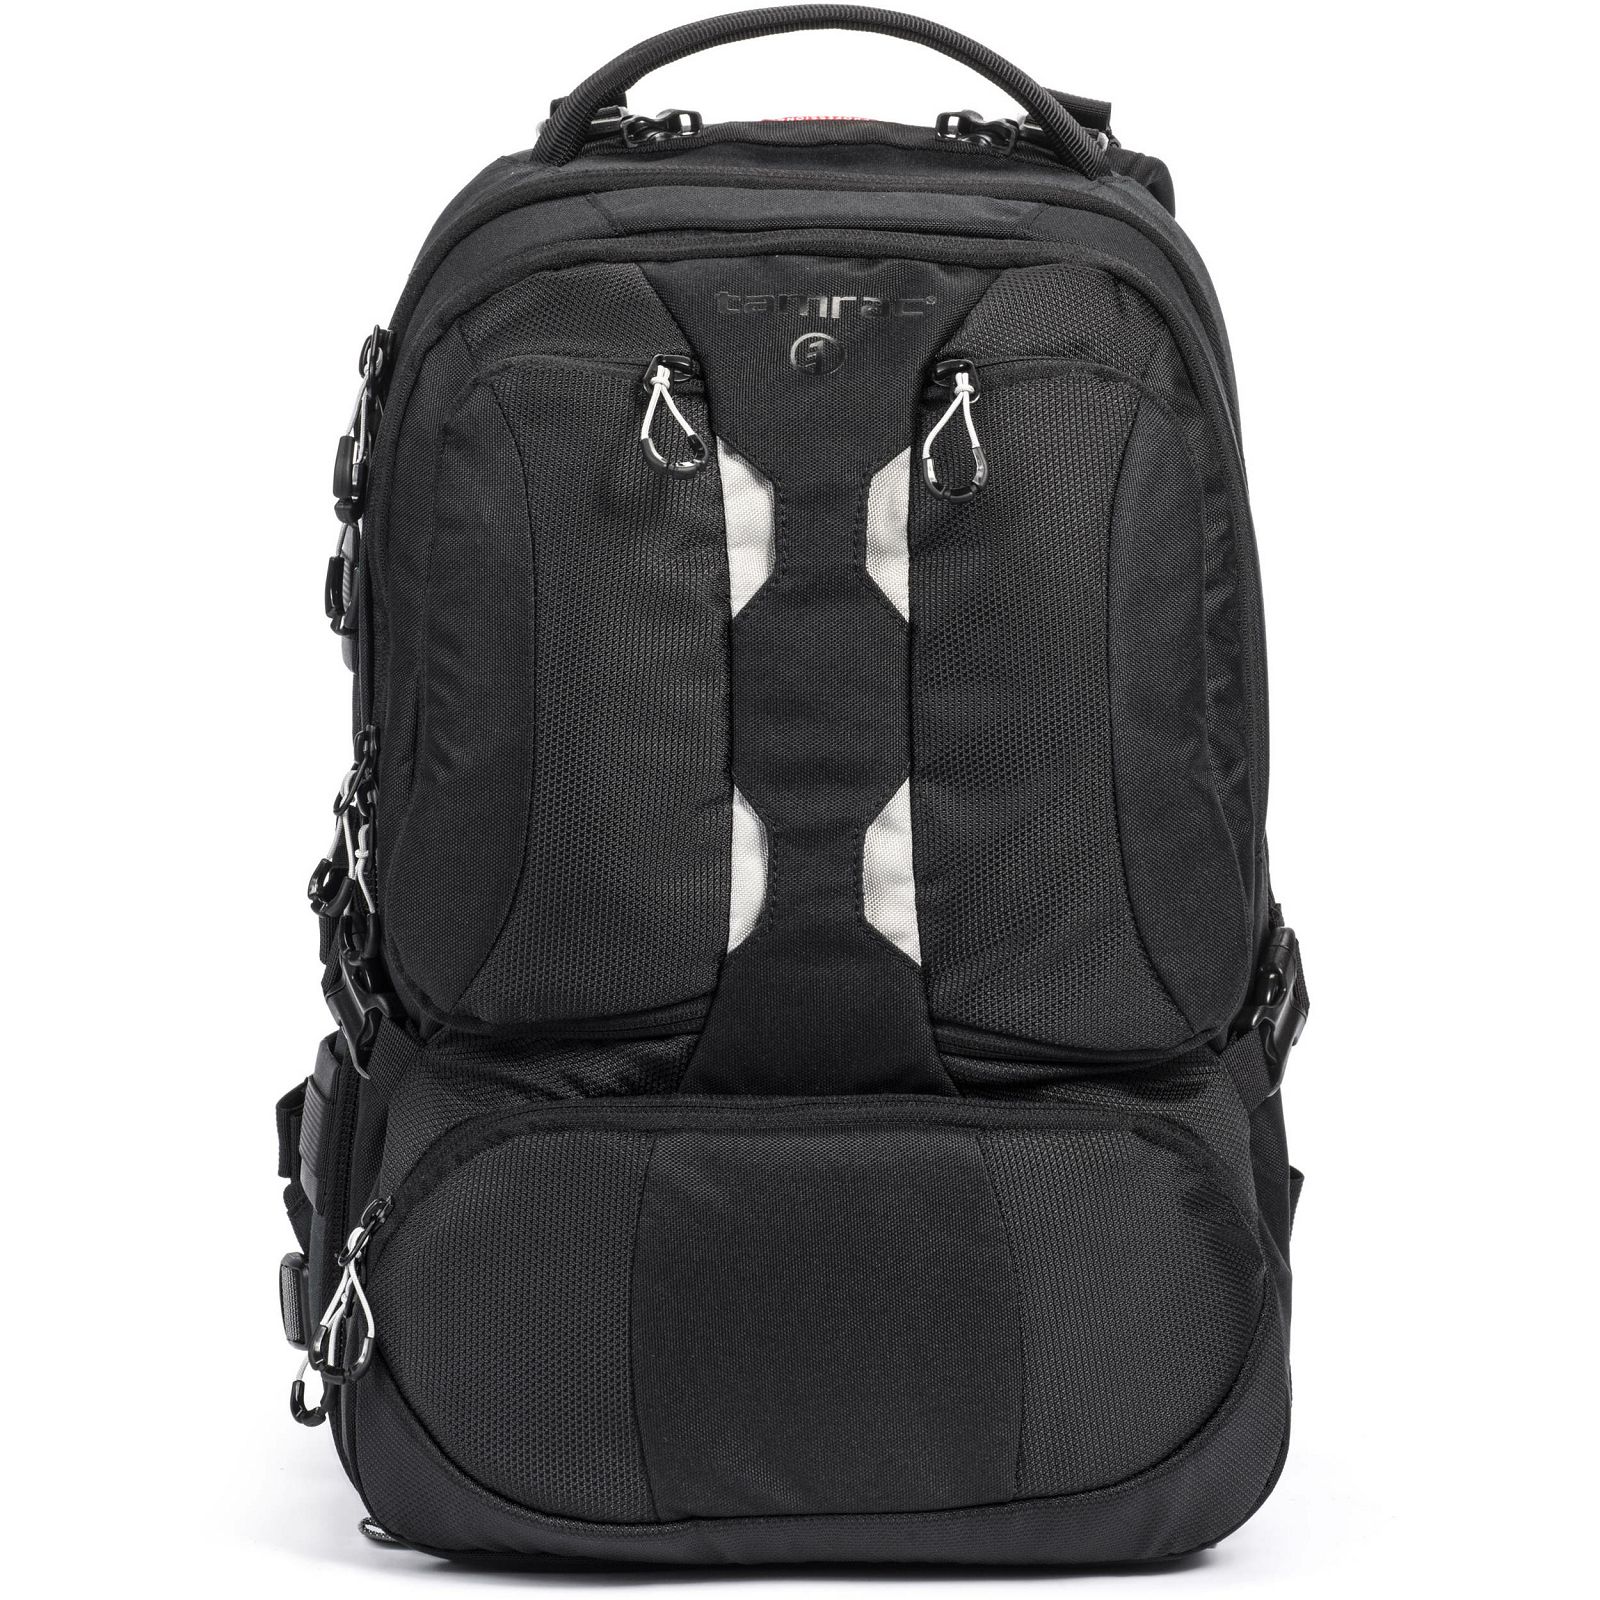 Tamrac Anvil Slim 15 Backpack Black crni ruksak za foto opremu (T0230-1919)